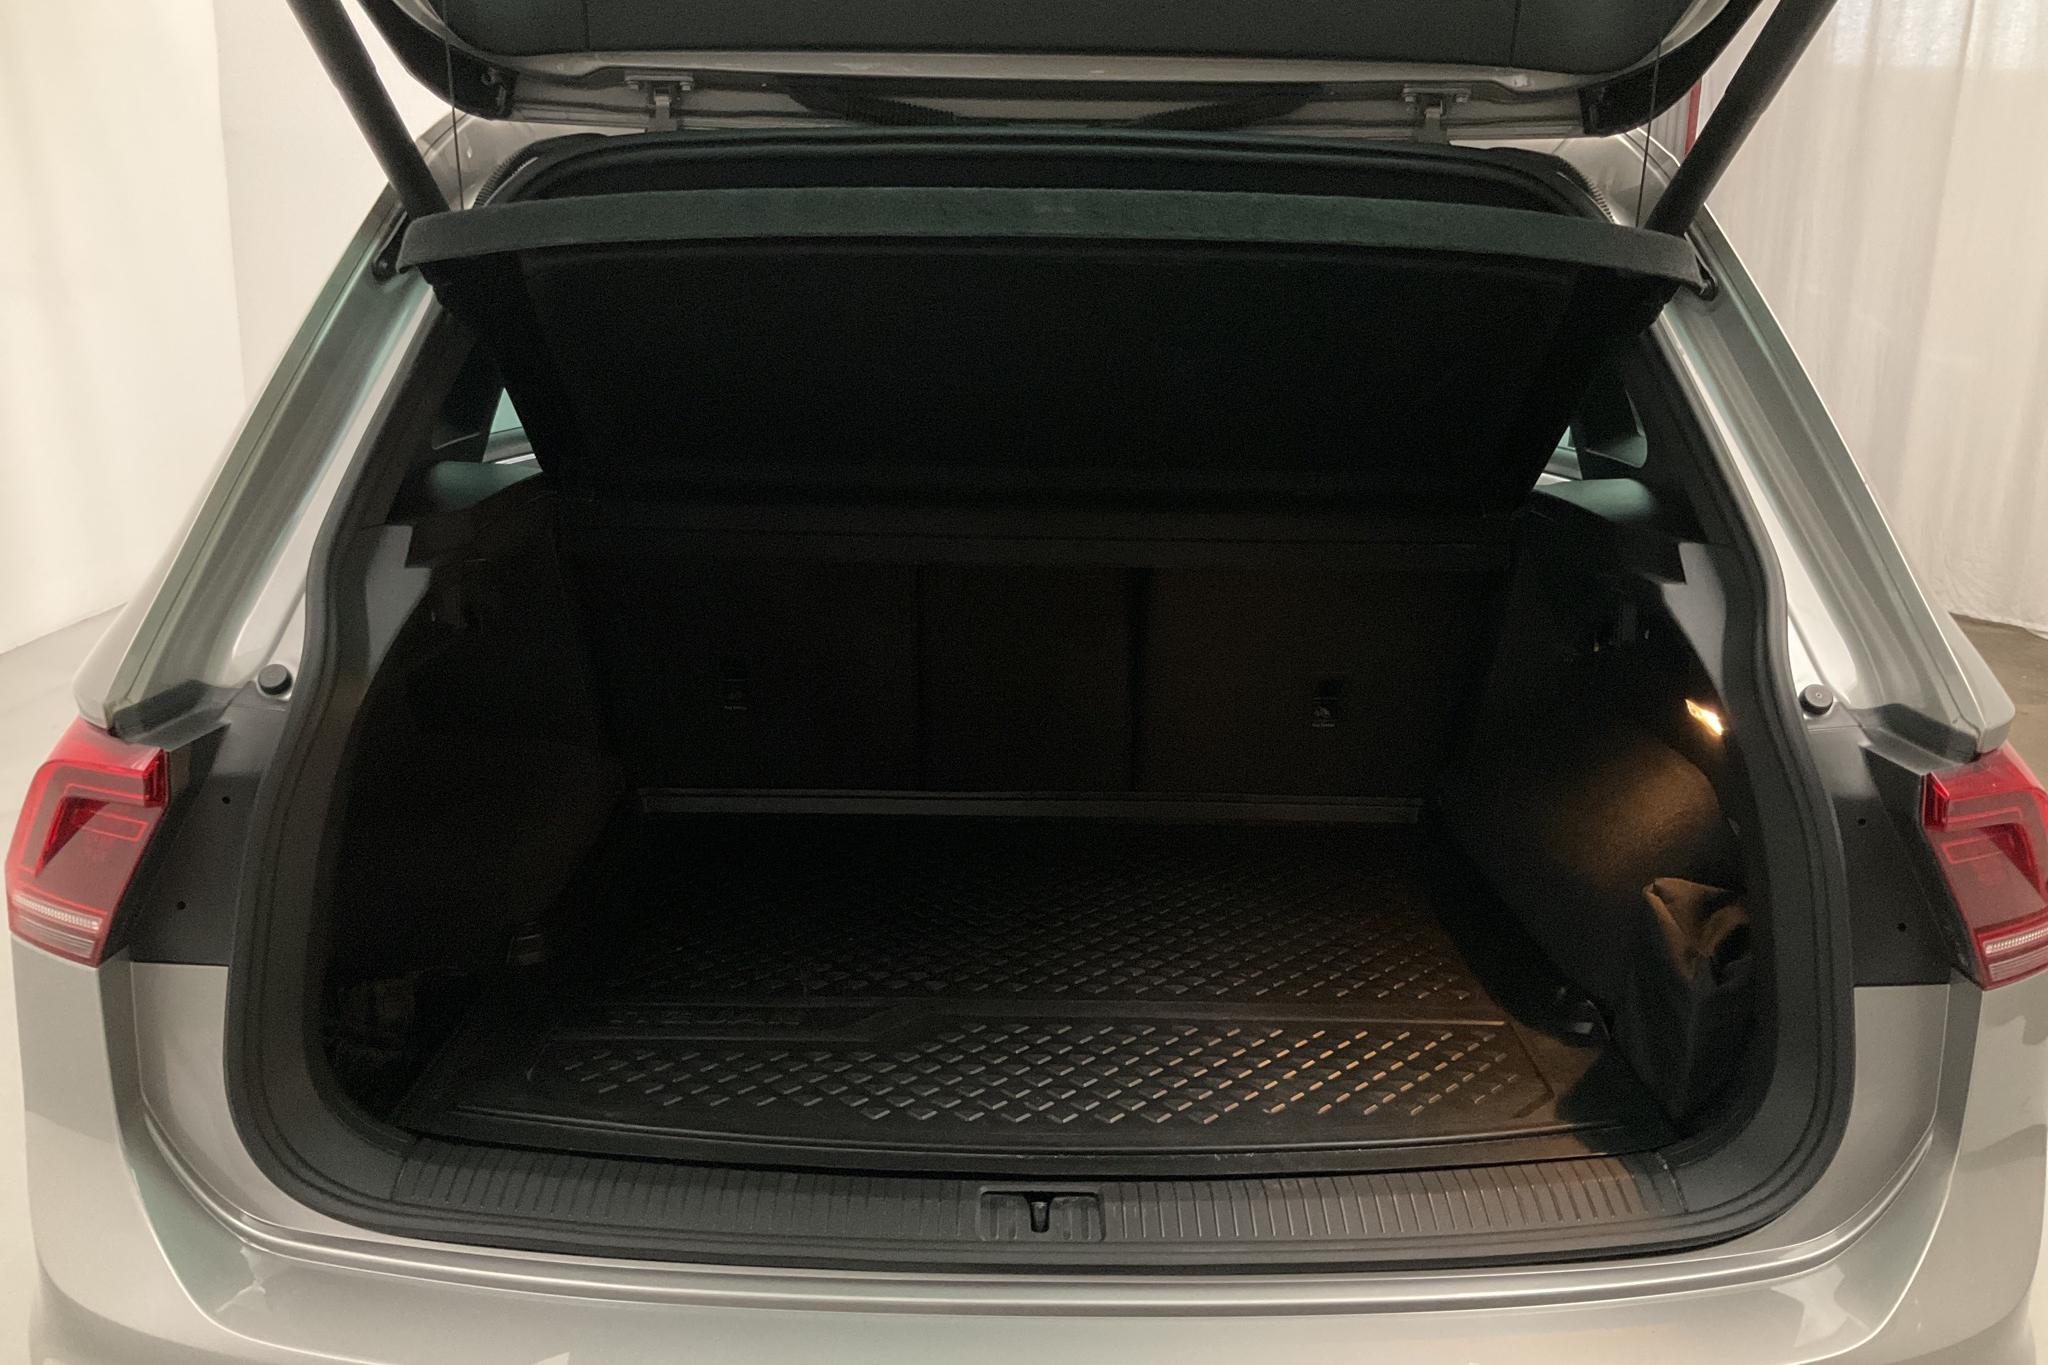 VW Tiguan 2.0 TDI 4MOTION (240hk) - 69 800 km - Automatic - silver - 2017